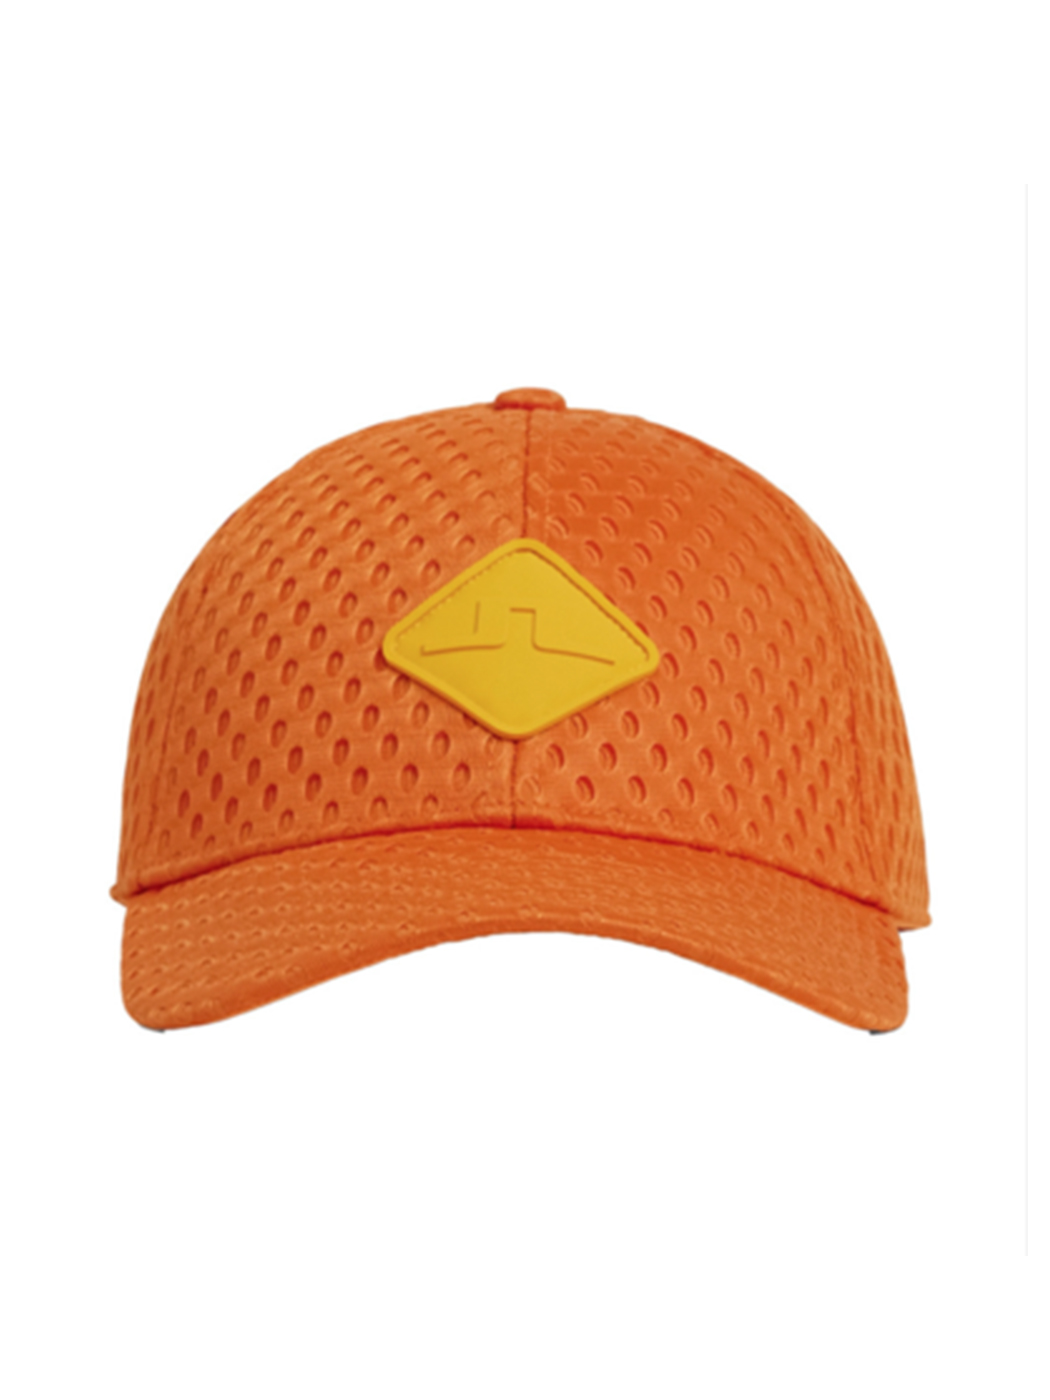 제이린드버그 남성 골프 모자 브리지 스트라이크 캡 모자 (러셋 오렌지)